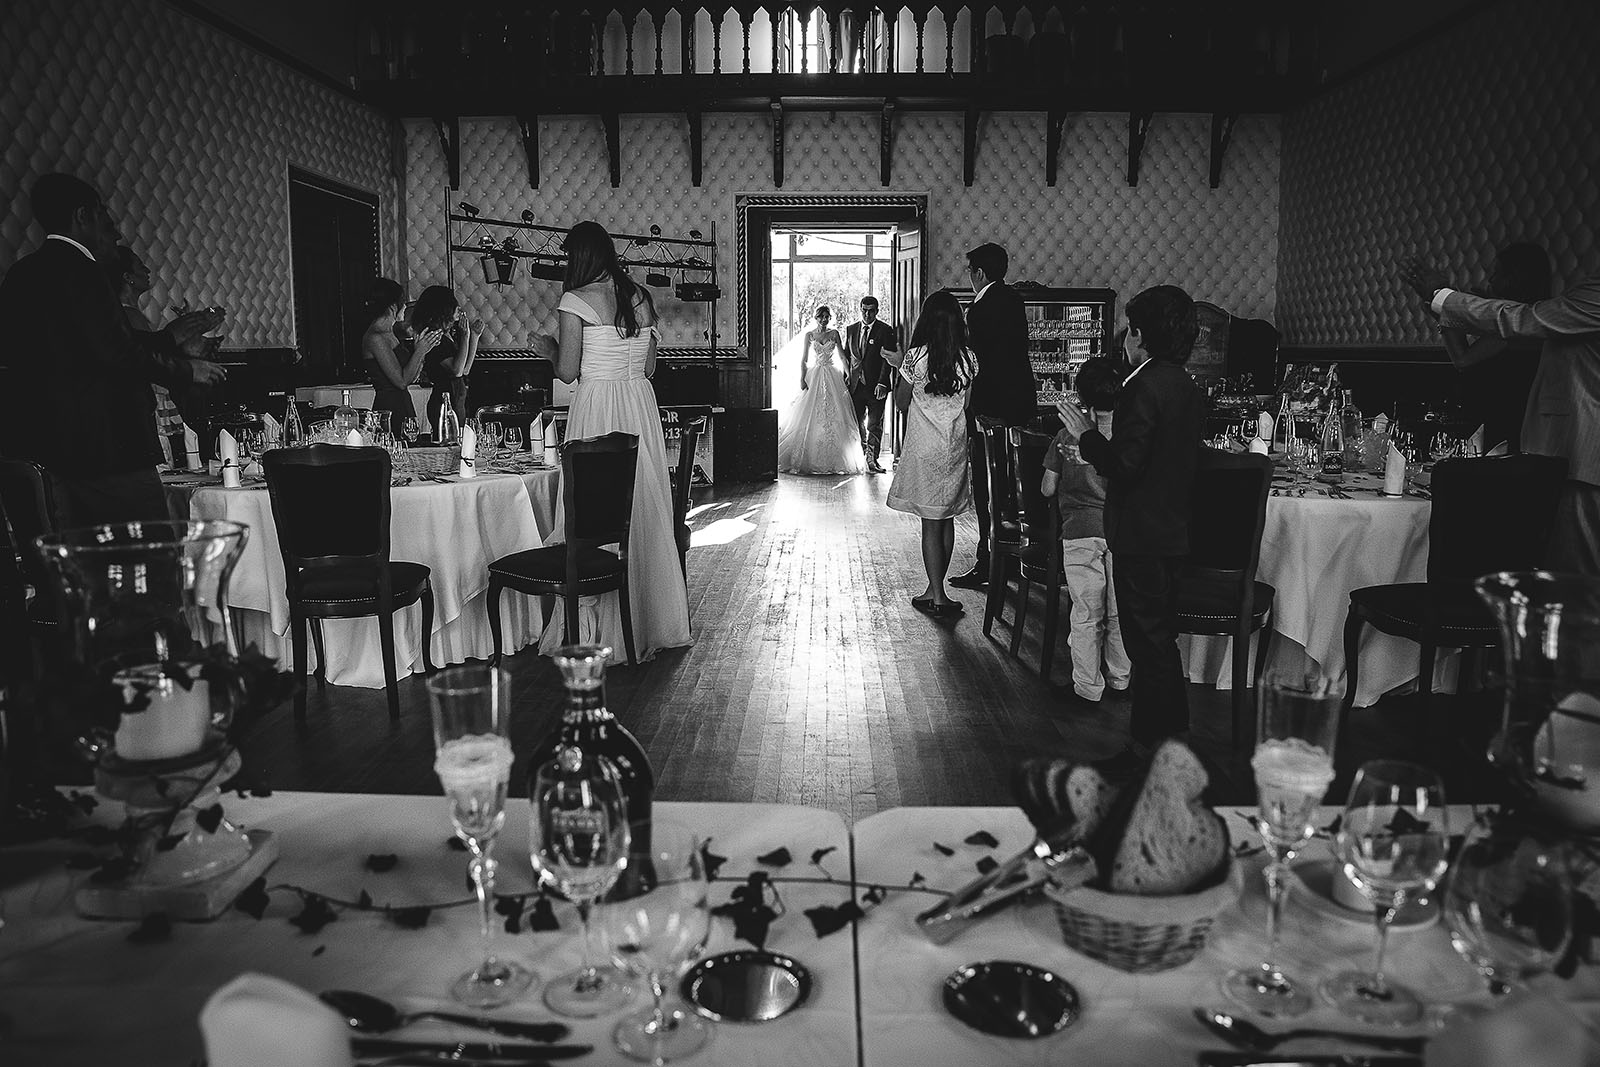 Mariage au Château de Beguin David Pommier photographe de mariage. Les mariés entrent dans la salle de réception